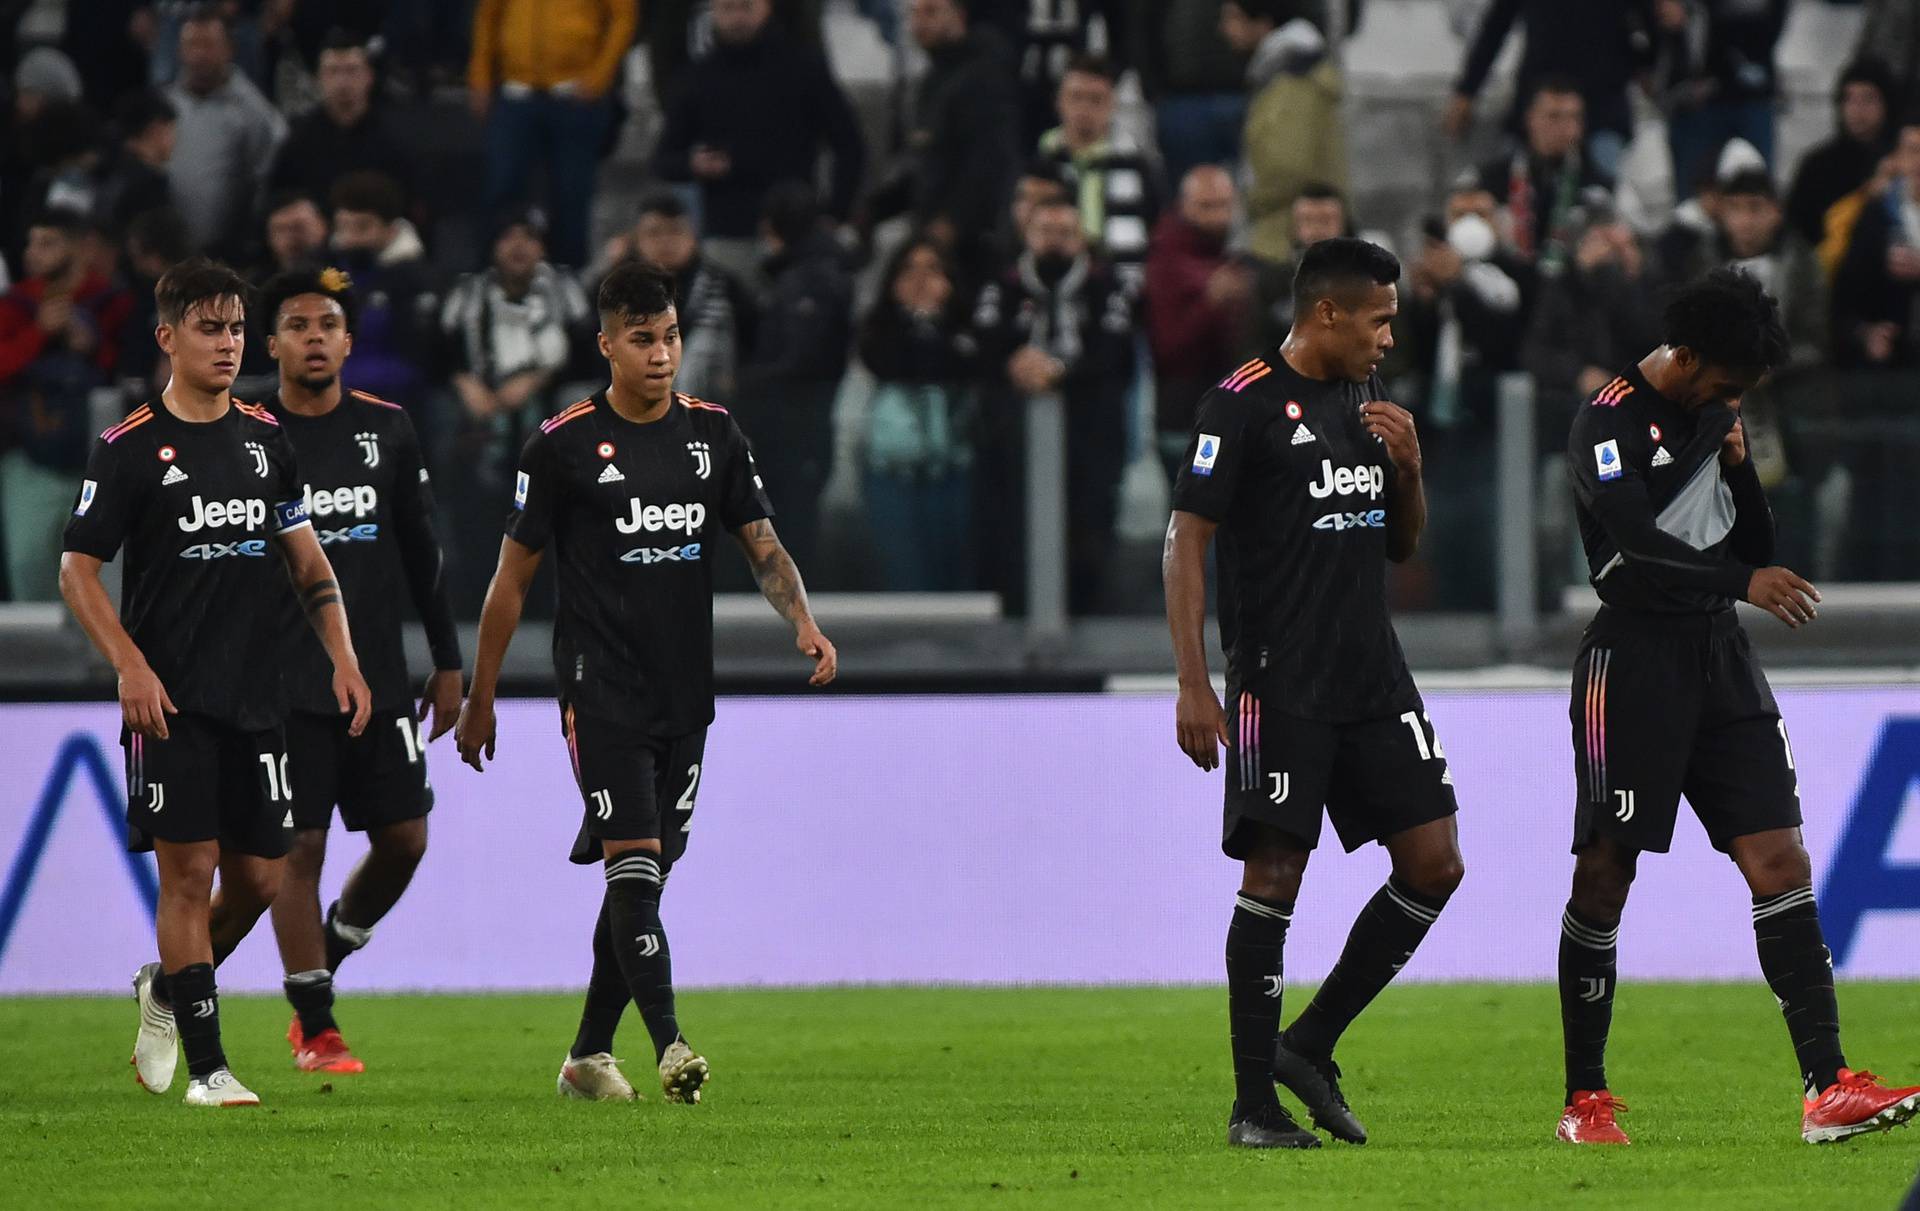 Serie A - Juventus v U.S. Sassuolo